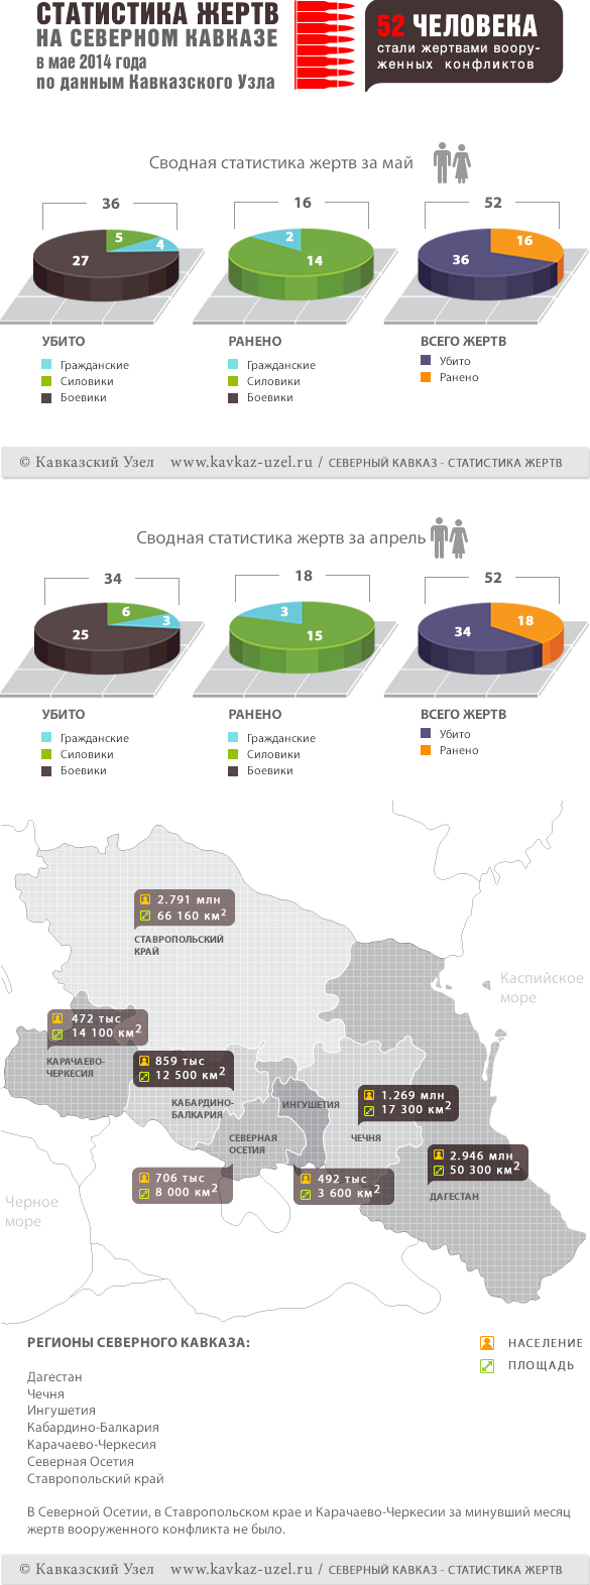 Инфографика. Статистика жертв на Северном Кавказе в мае 2014 года по данным "Кавказского узла"